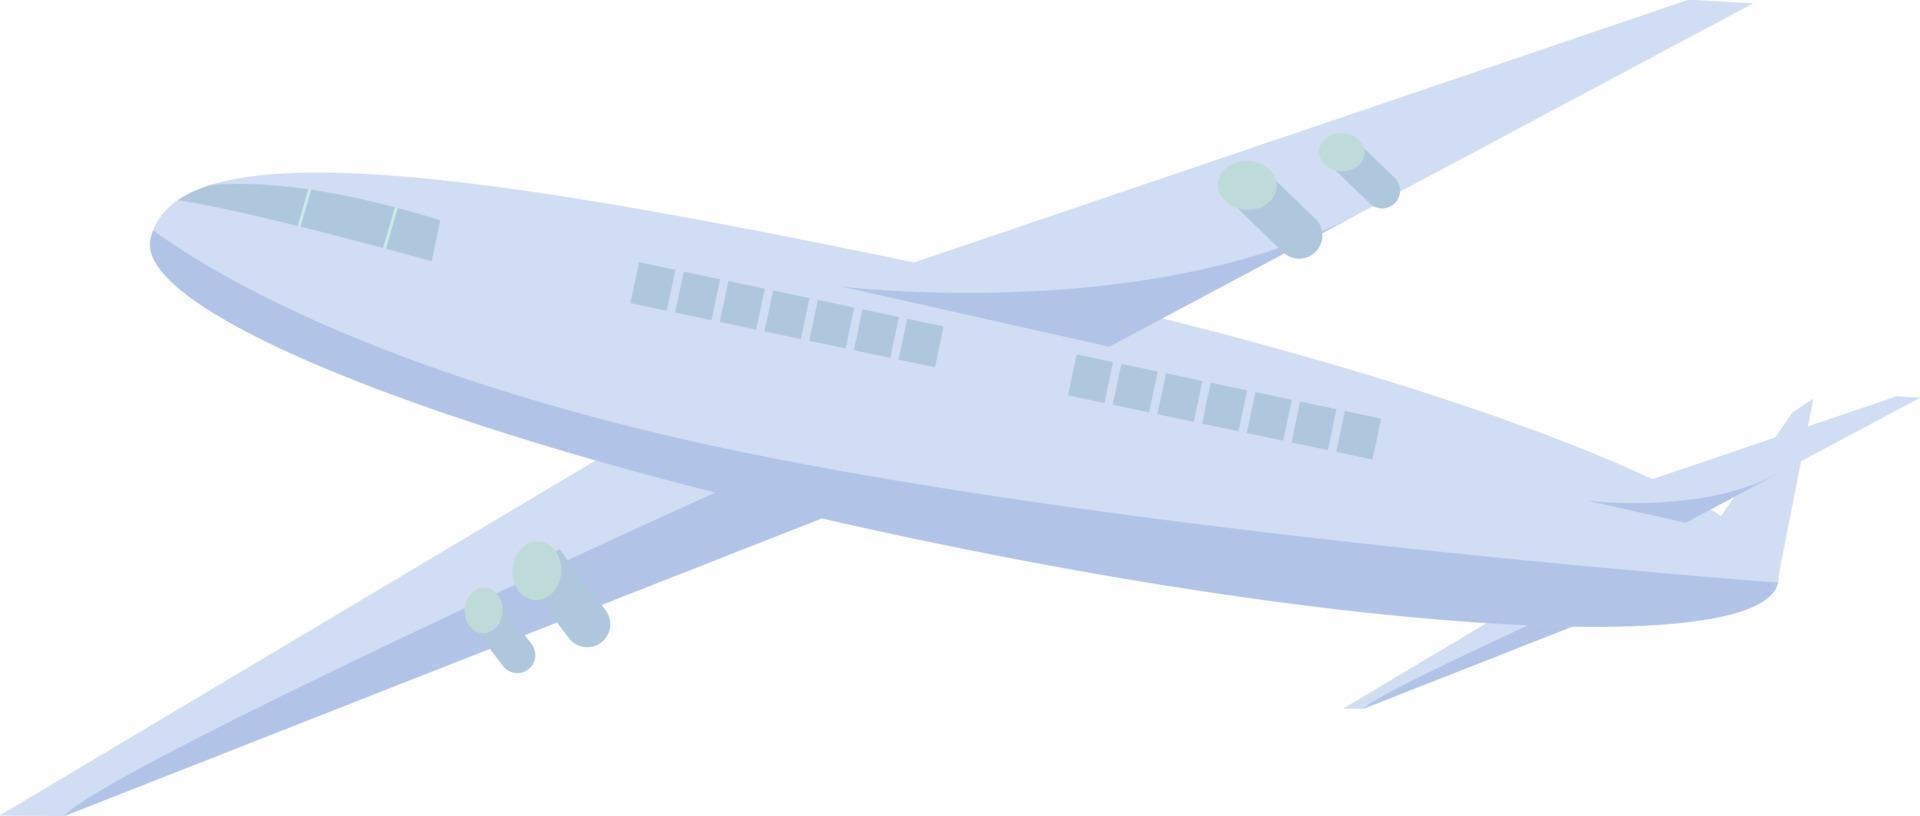 vuelo en avión de pasajeros objeto vectorial de color semiplano. avión seguro. artículo de tamaño completo en blanco. viajar en avión ilustración de estilo de dibujos animados simple para diseño gráfico web y animación vector